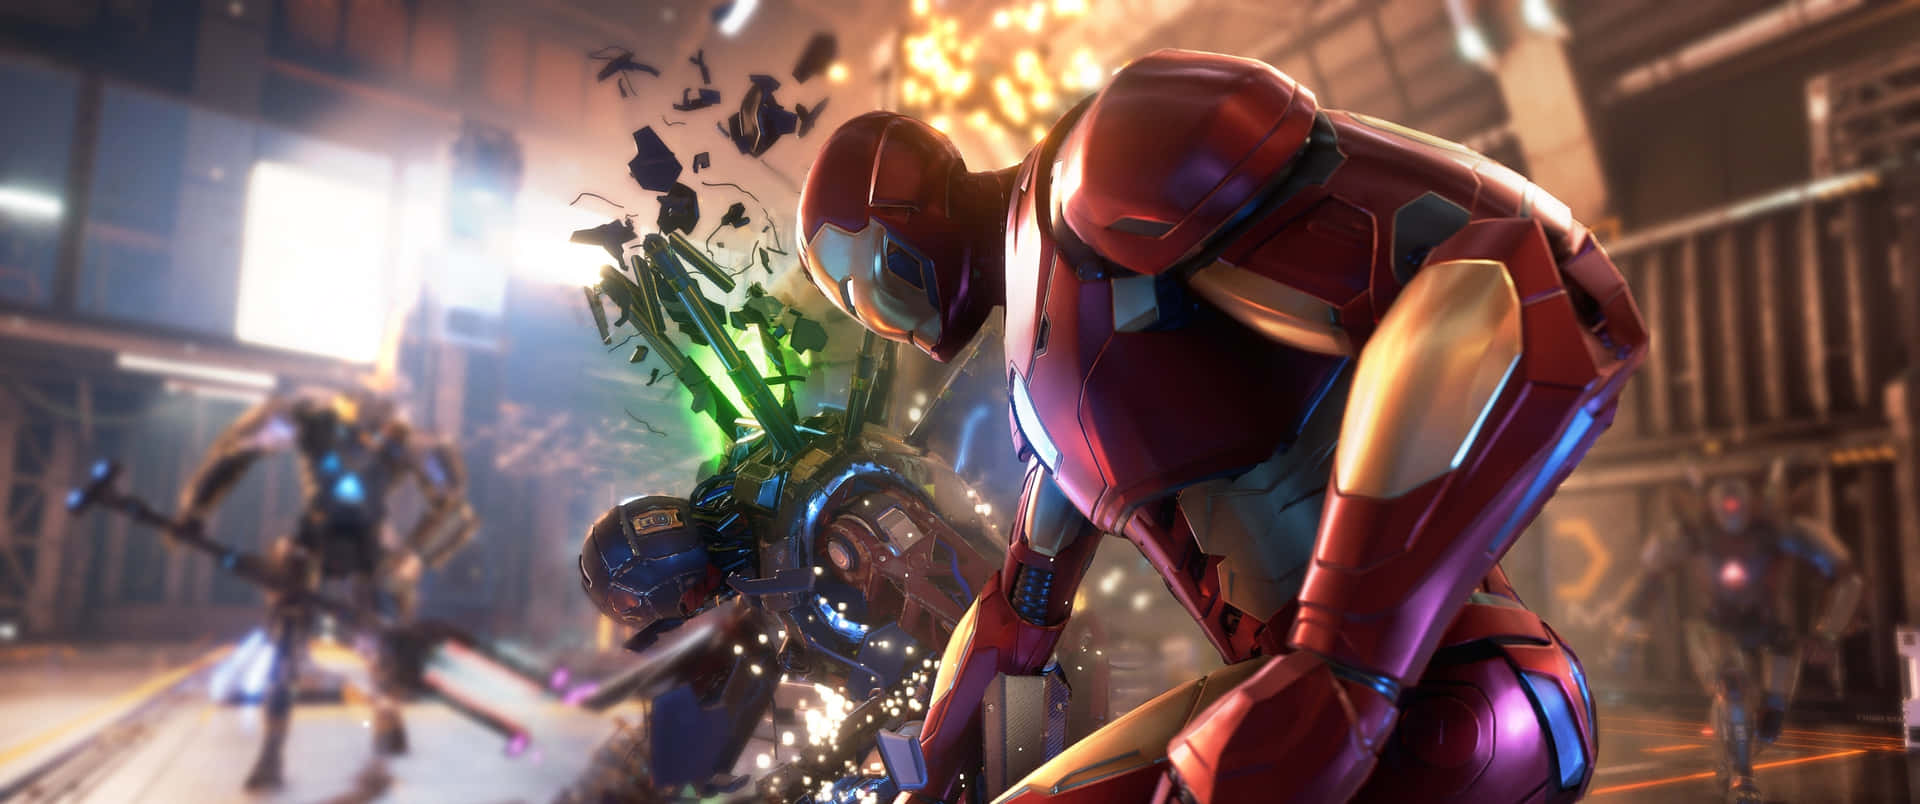 Unascena Di Un Videogioco Con Iron Man E Altri Personaggi